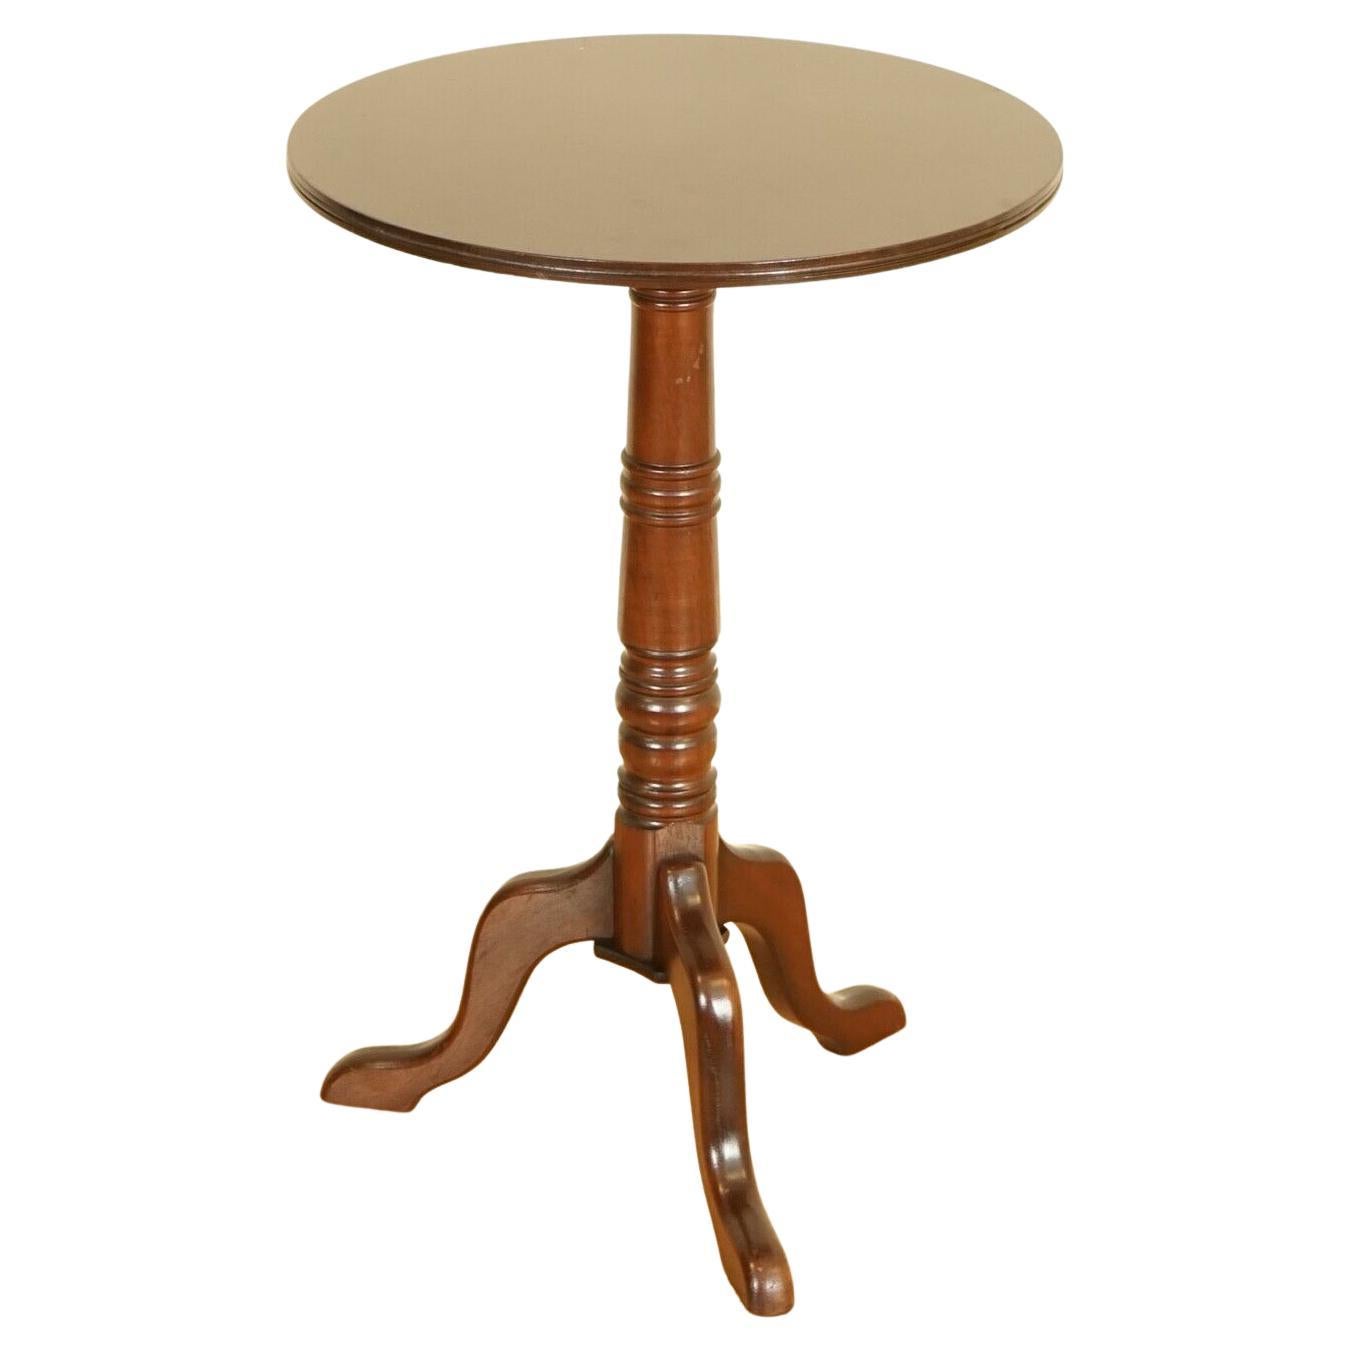 Stunning Victorian Side Table/Wine Table on Elegant Tripod Legs